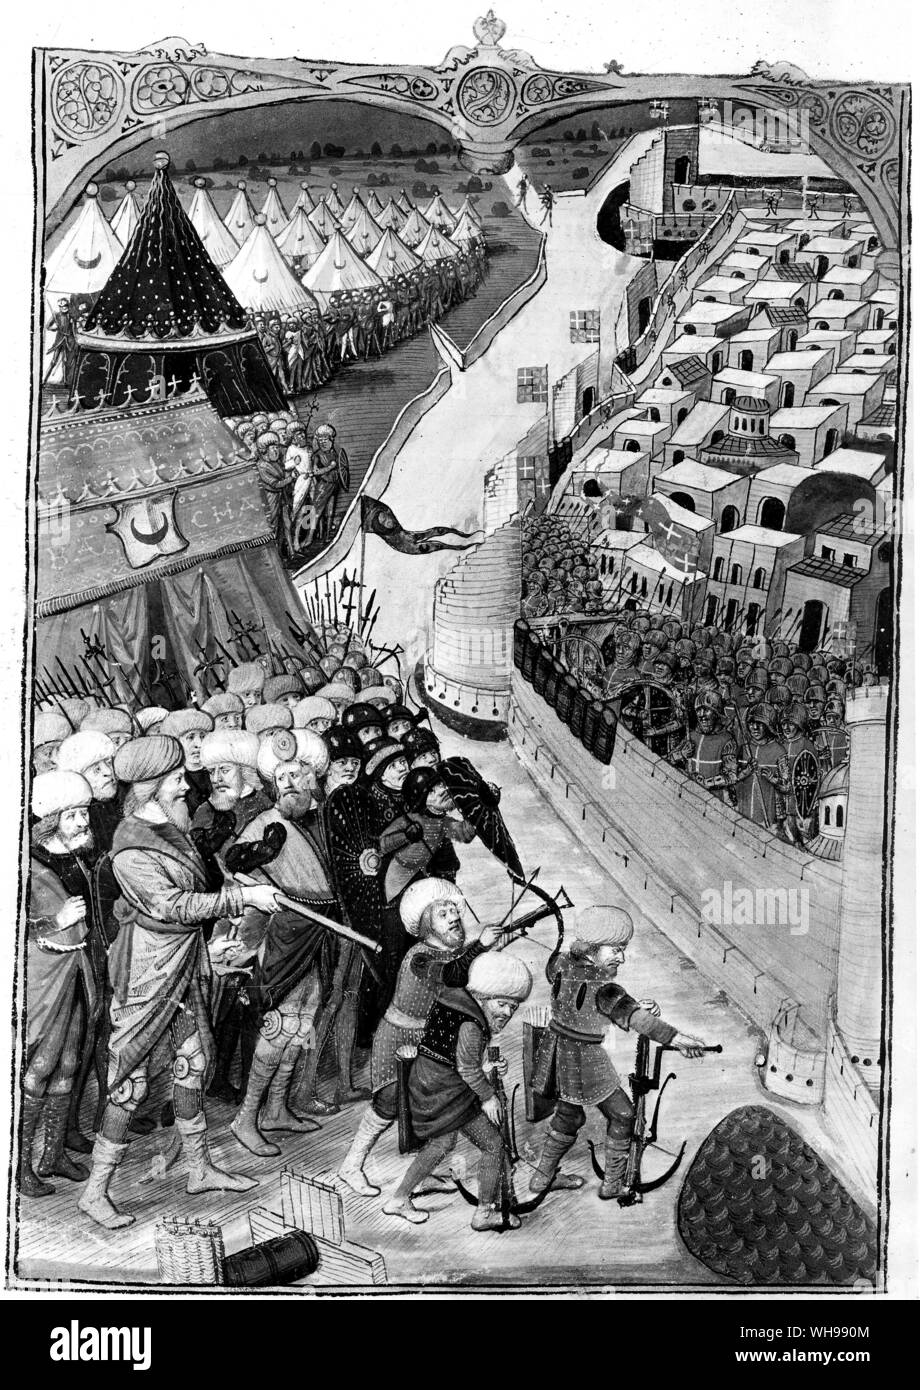 La guerra europea/i turchi ottomani. I Turchi portati loro impero in profondità in Europa. Essi assediato invano di Rodi nel 1480, mostrati in questa immagine, ma hanno avuto successo quasi cinquanta anni più tardi. Foto Stock